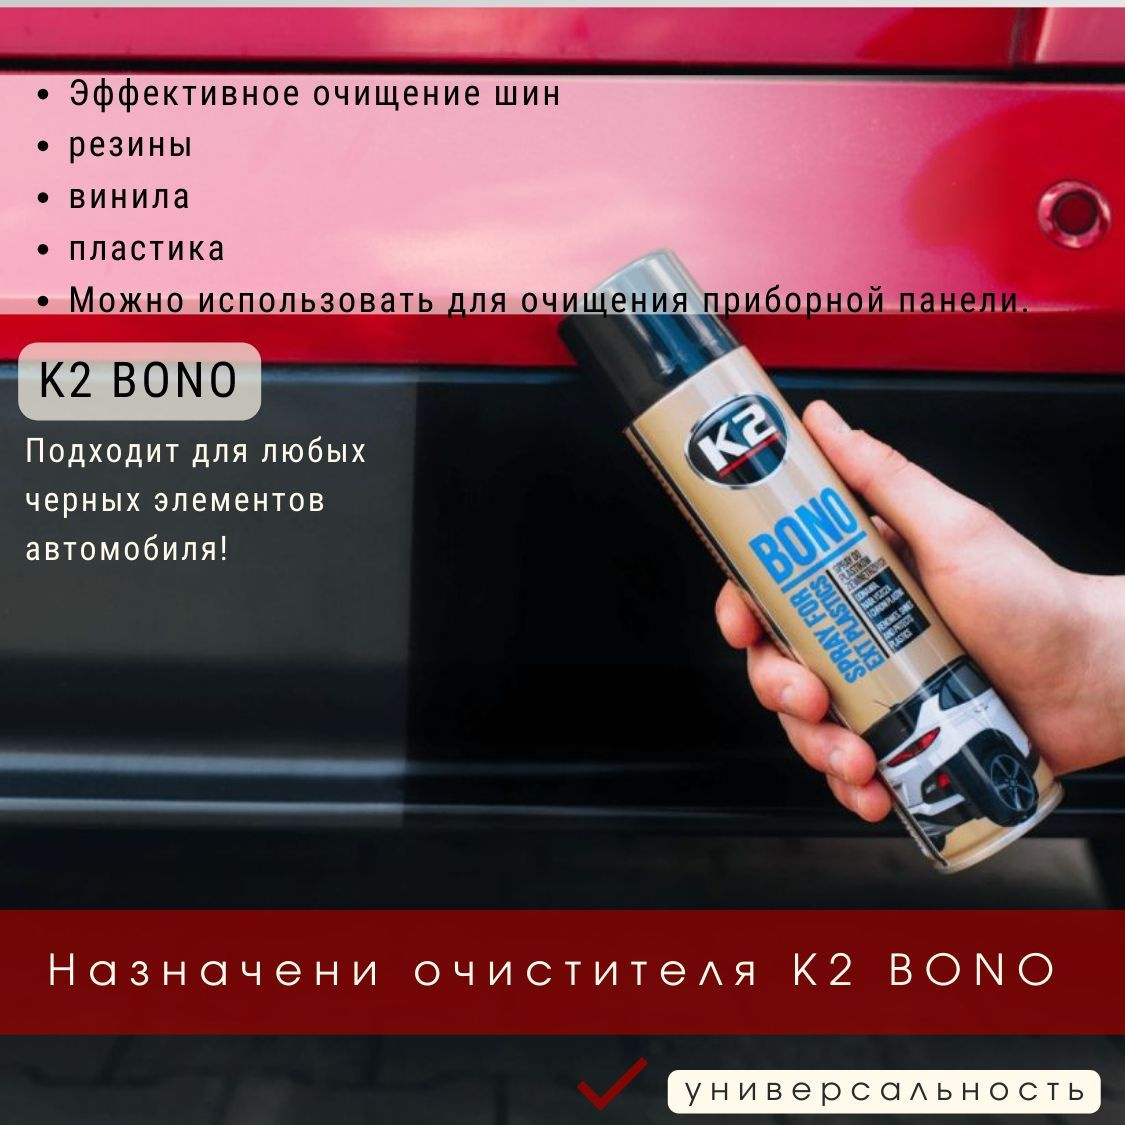 Очиститель для пластика автомобиля K2 BONO эффективно очищает, резиновые, виниловые и пластиковые элементы вашего авто, восстанавливает внешний вид и придает первоначальный блеск пластиковым бамперам, решеткам радиаторов, кожухам наружных зеркал и молдингам. Не забудьте, что этот очиститель также предотвращает оседание пыли на автомобиле и даже работает как очиститель битумных пятен. Вы также можете использовать этот универсальный очиститель-восстановитель пластика для автомобиля, чтобы придать вашей приборной панели новое чернение.